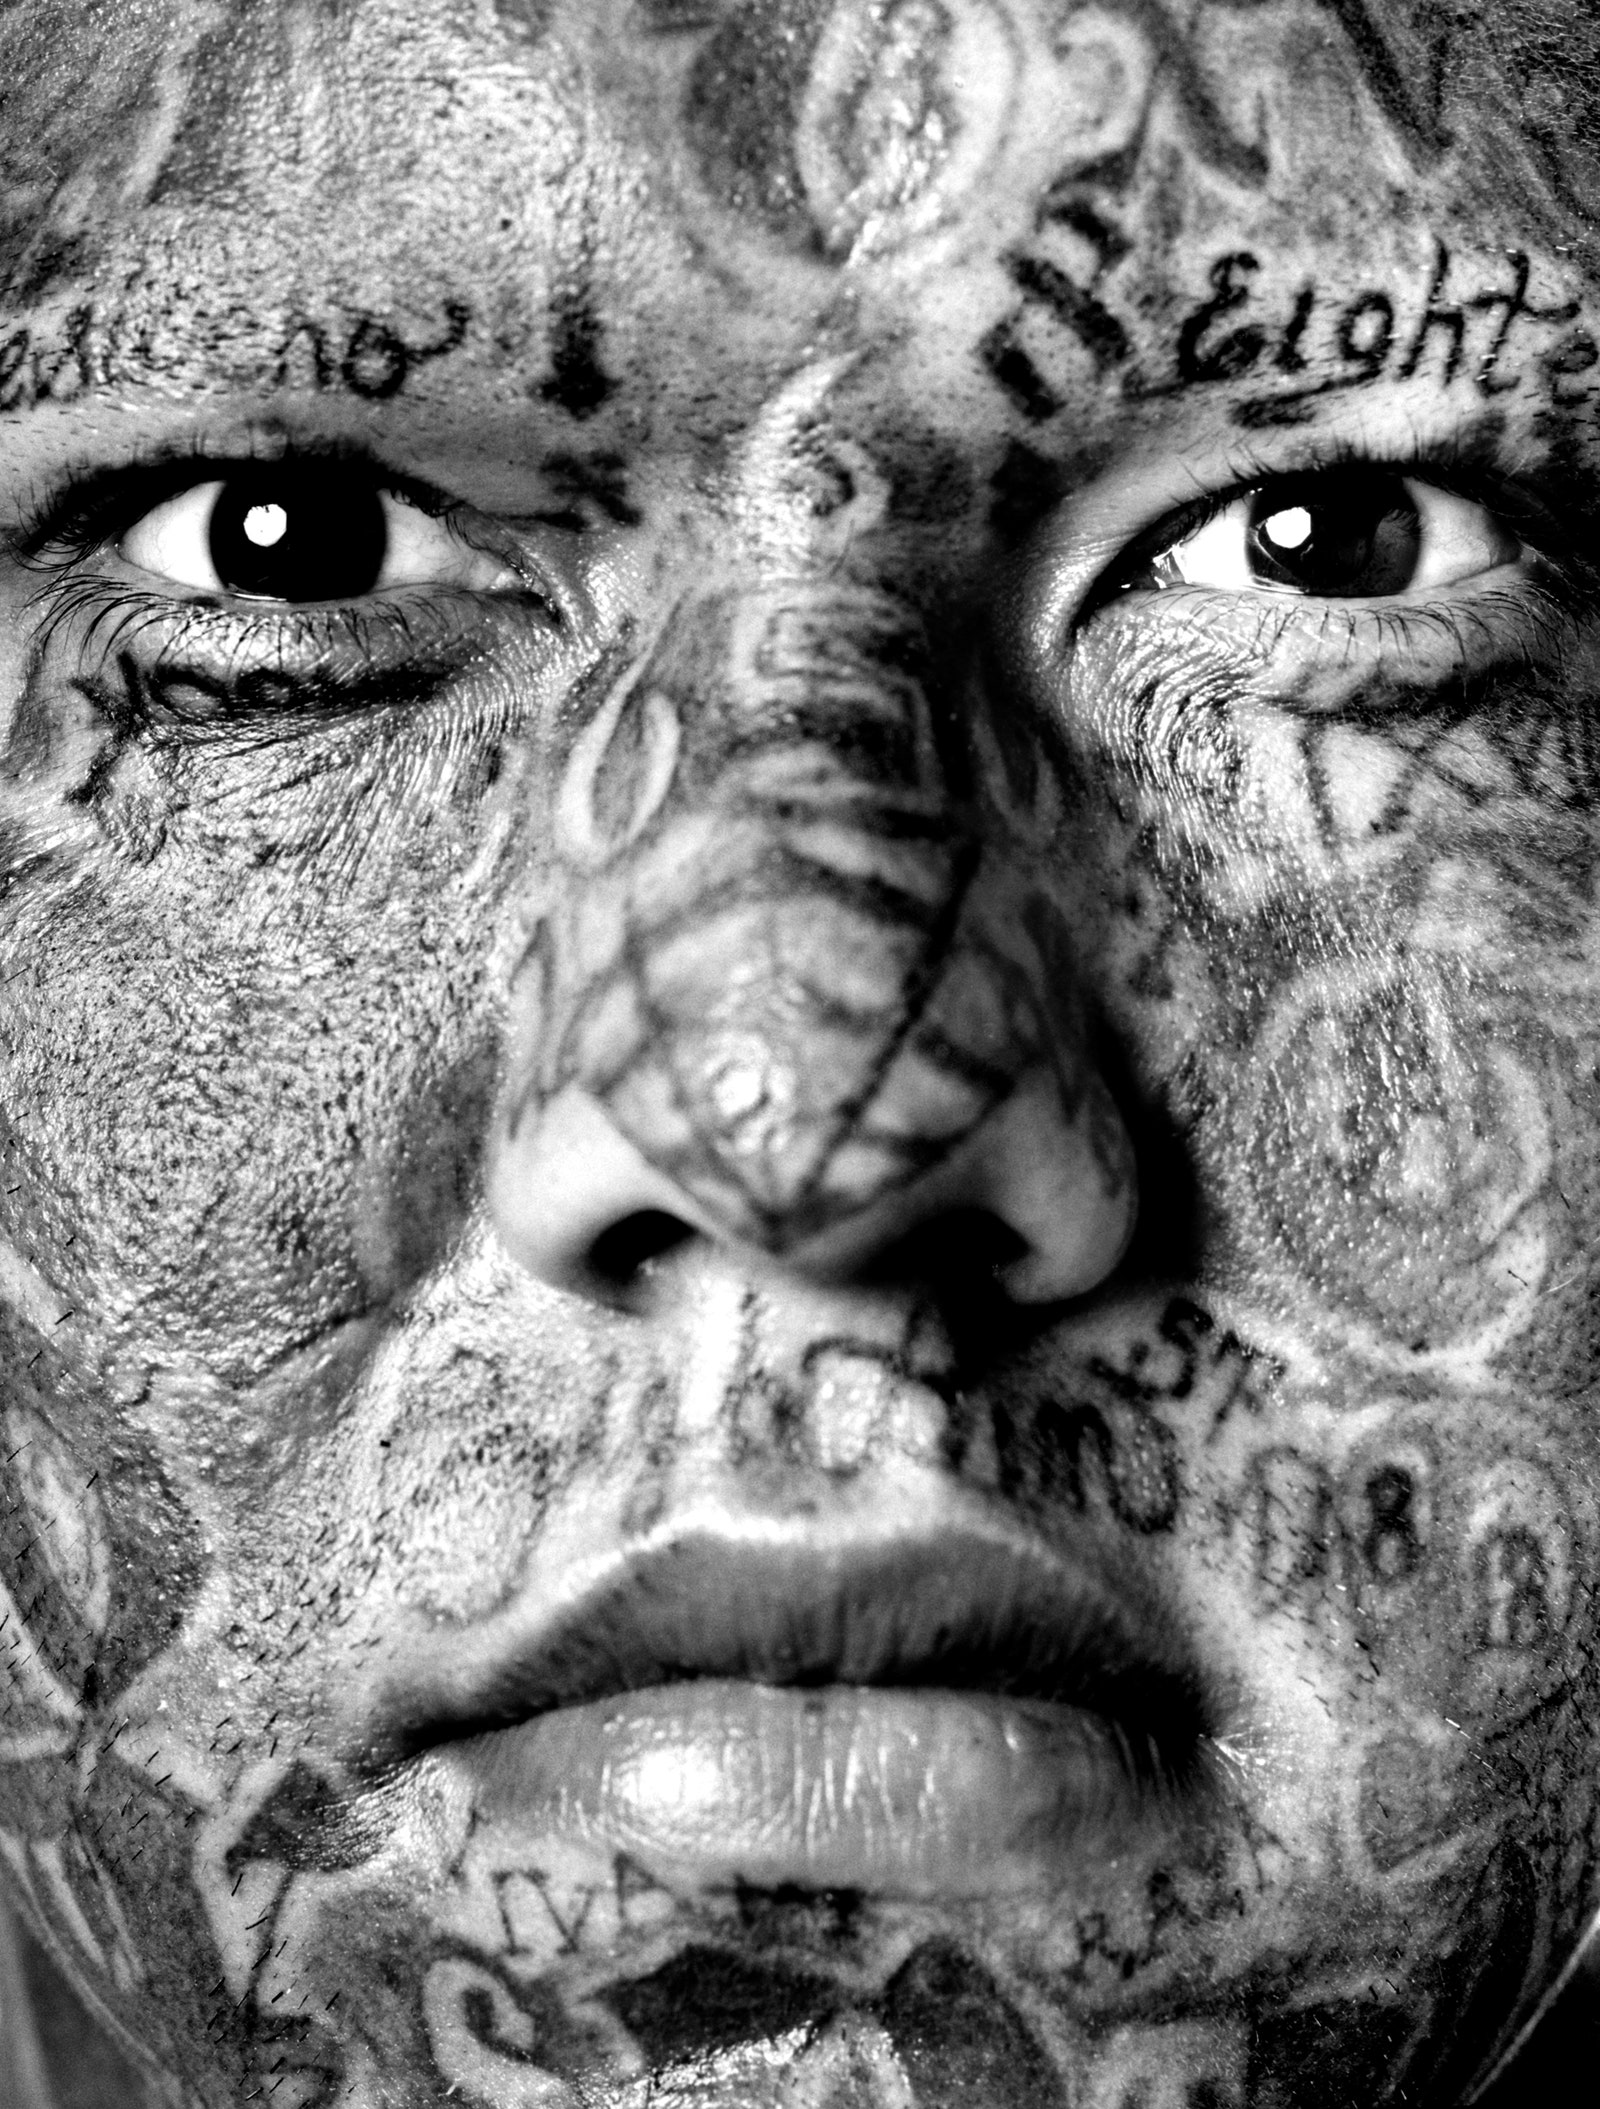 Изабель Муньос. Портрет члена банды мара. Из серии “Марас”. 2006. Фотография. Собрание автора Мадрид © Isabel Muñoz 2020.